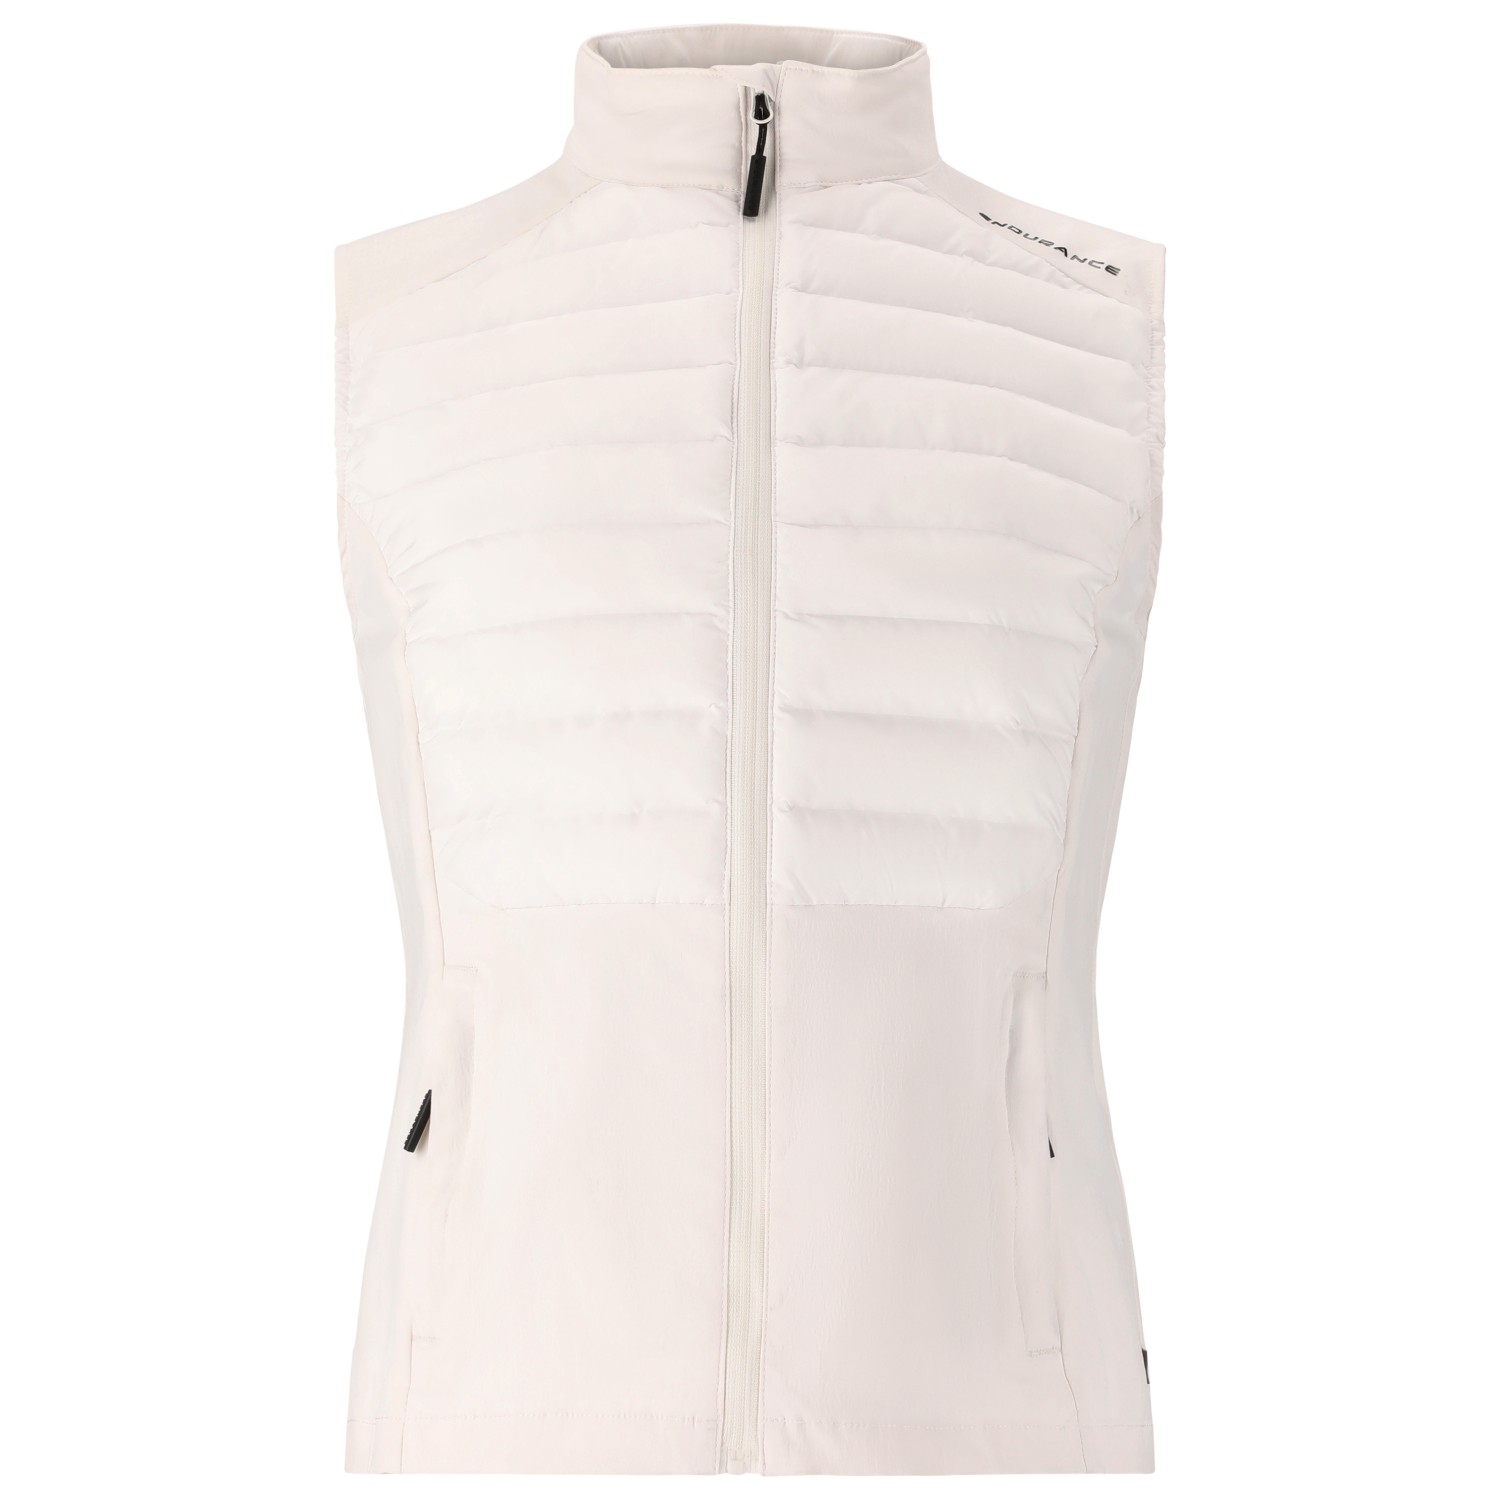 Жилет из синтетического волокна Endurance Women's Beistyla Hybrid Vest – Primaloft, белый